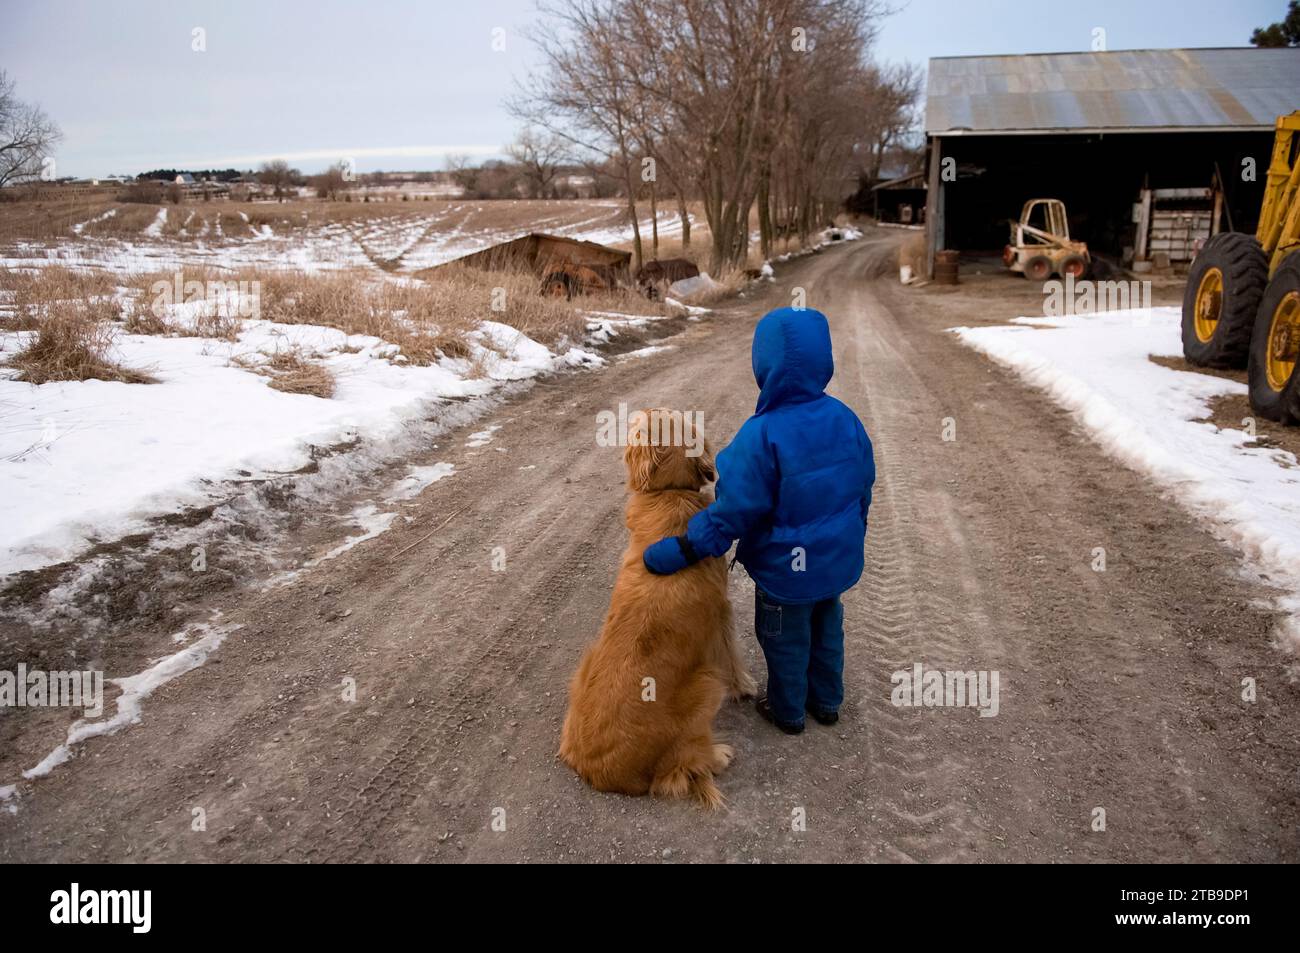 Junge steht auf einer Schotterstraße mit einem goldenen Retriever; Cortland, Nebraska, Vereinigte Staaten von Amerika Stockfoto